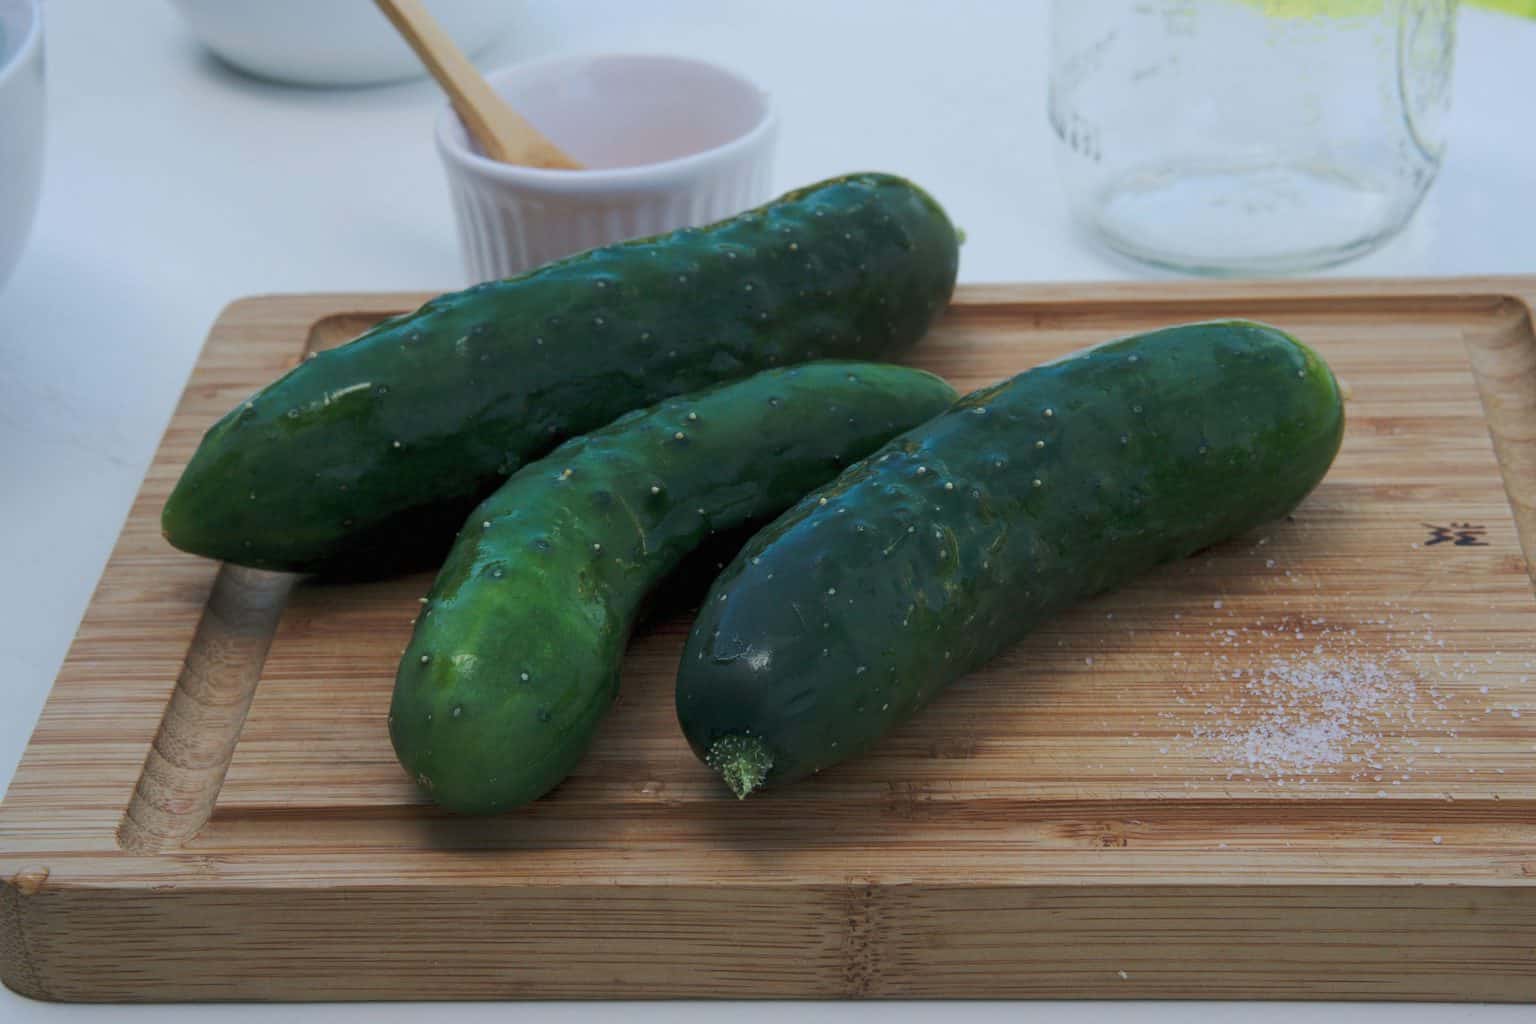 Homemade fermented pickles